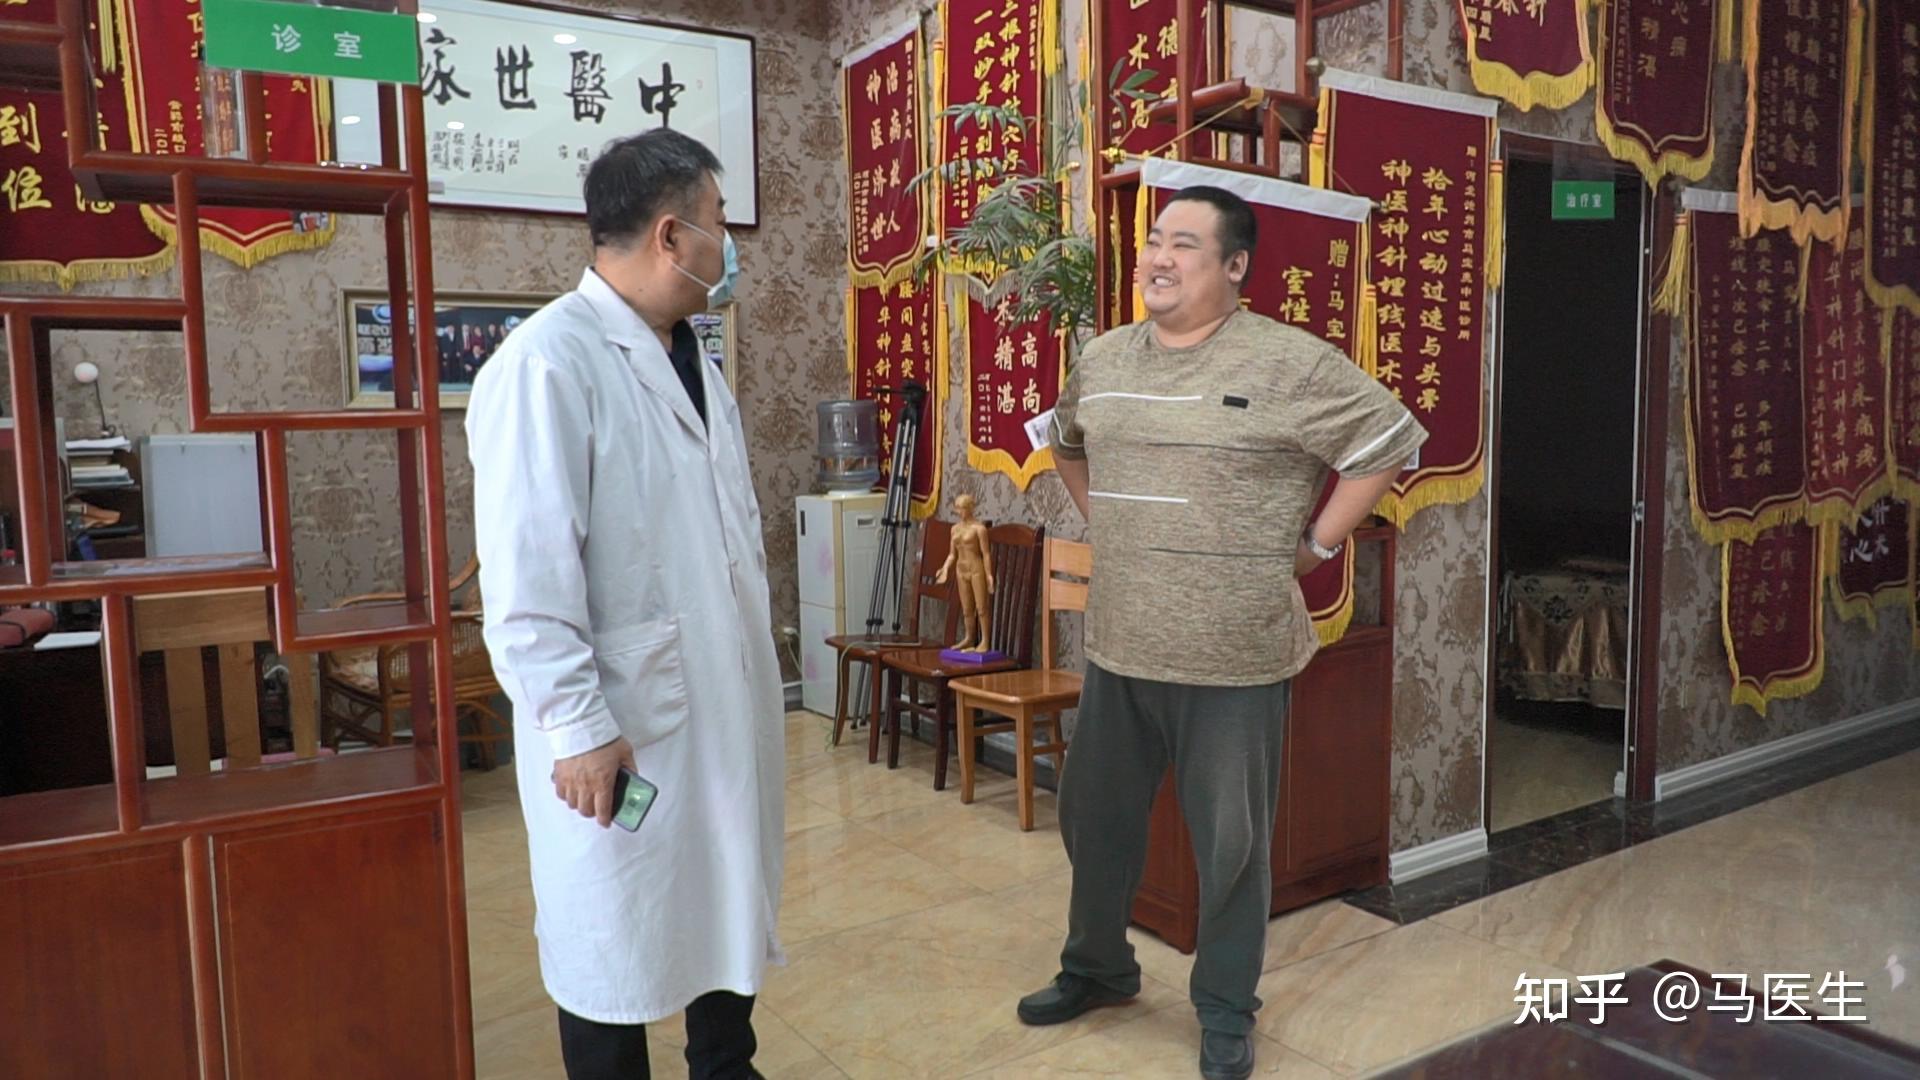 穴位埋线治疗儿童肥胖症-医院新闻-深圳市儿童医院